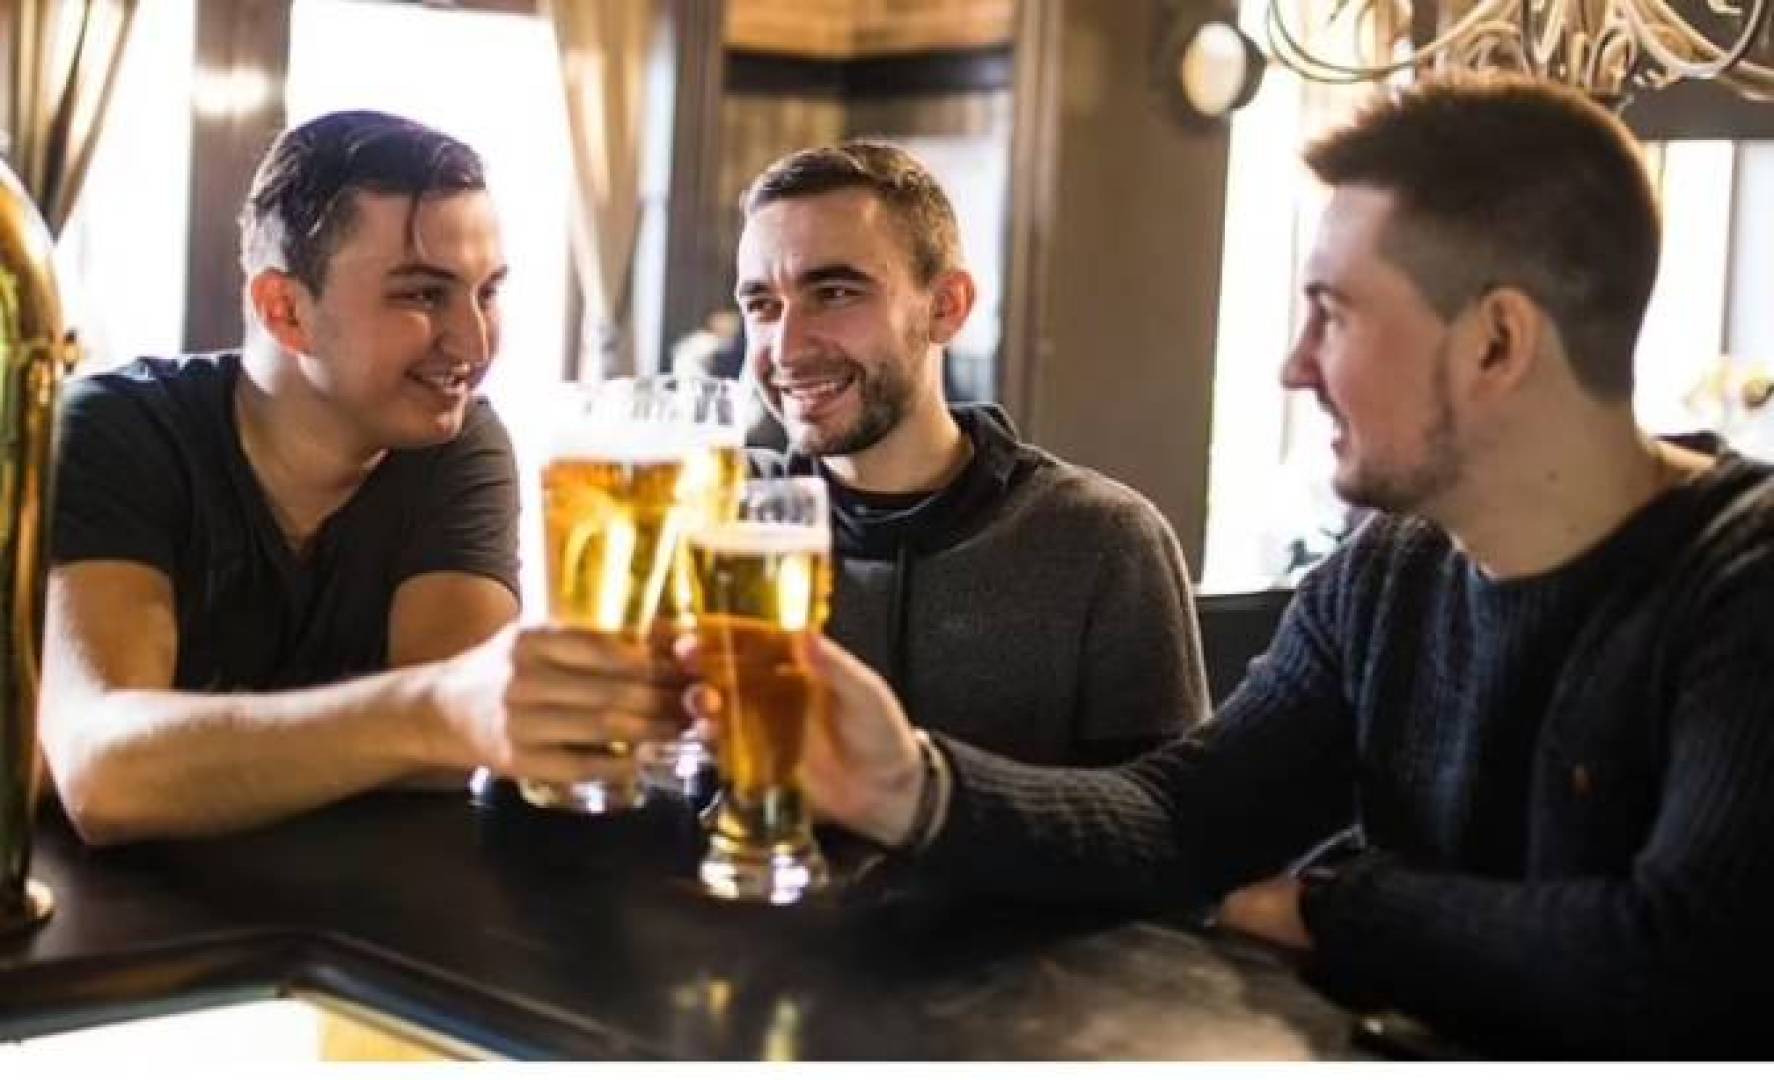 شرب الكحول يؤثر على القدرة الإنجابية للذكور